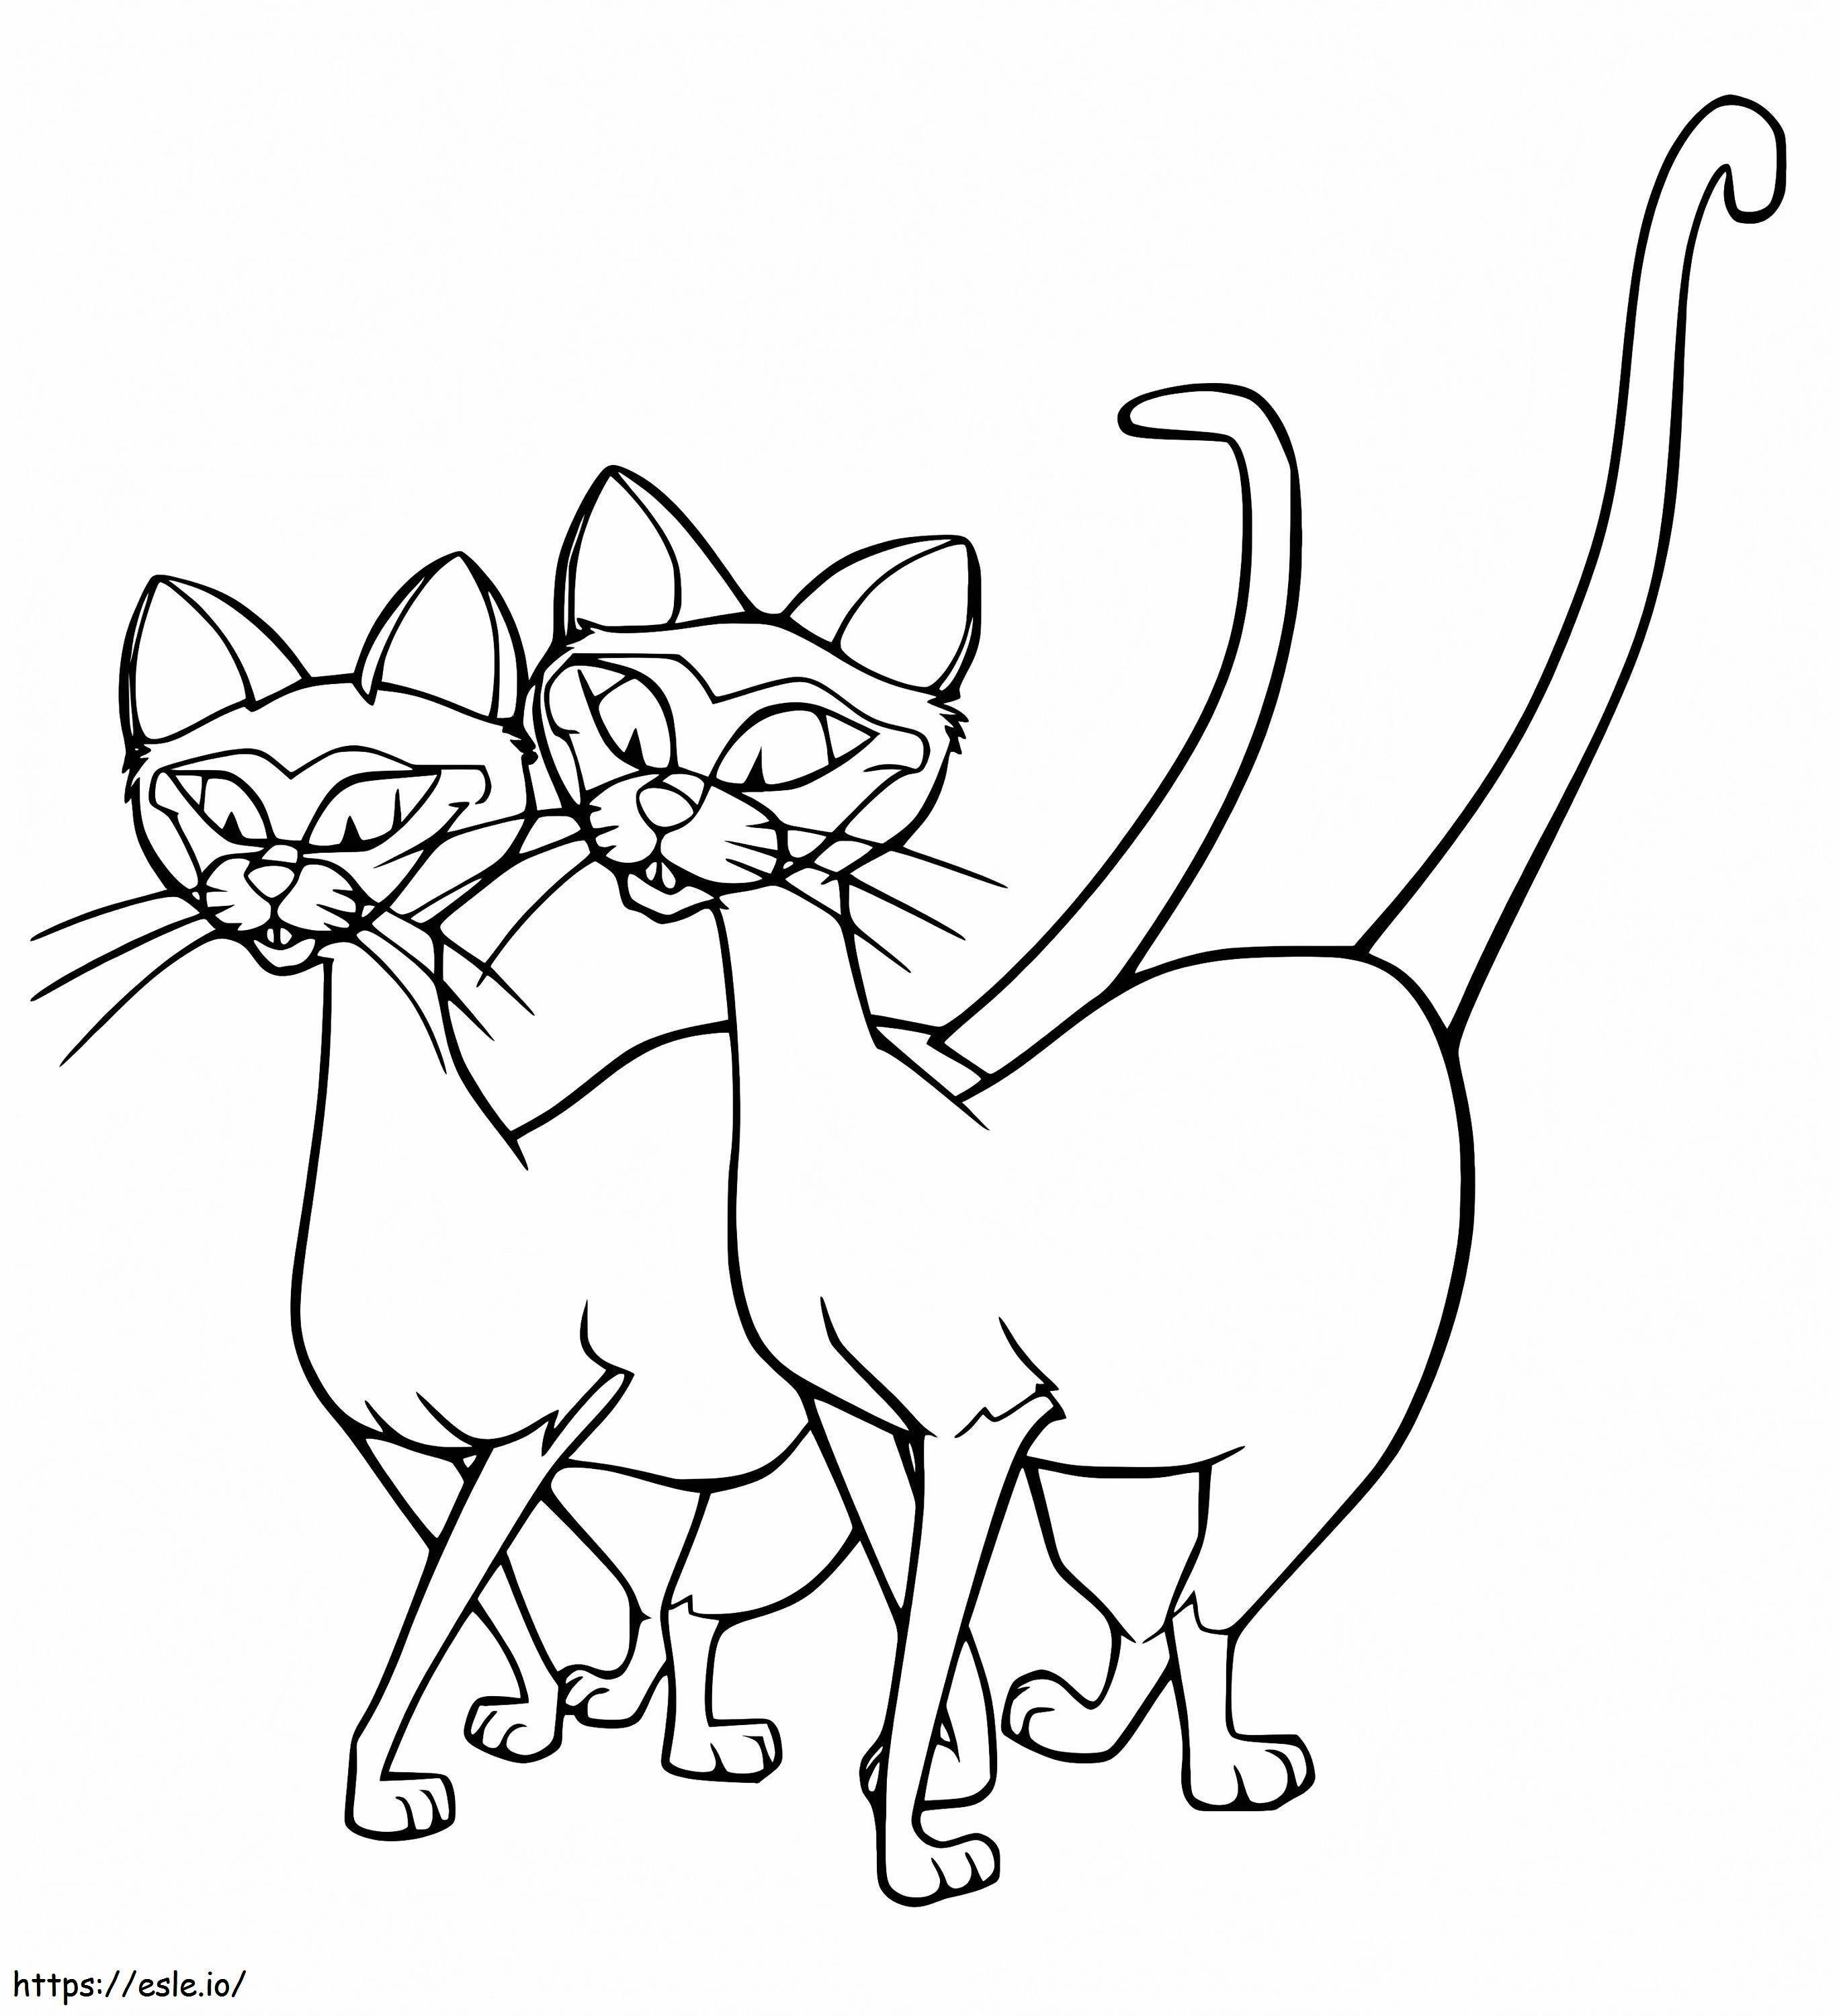 Coloriage Si et je suis des chats méchants à imprimer dessin